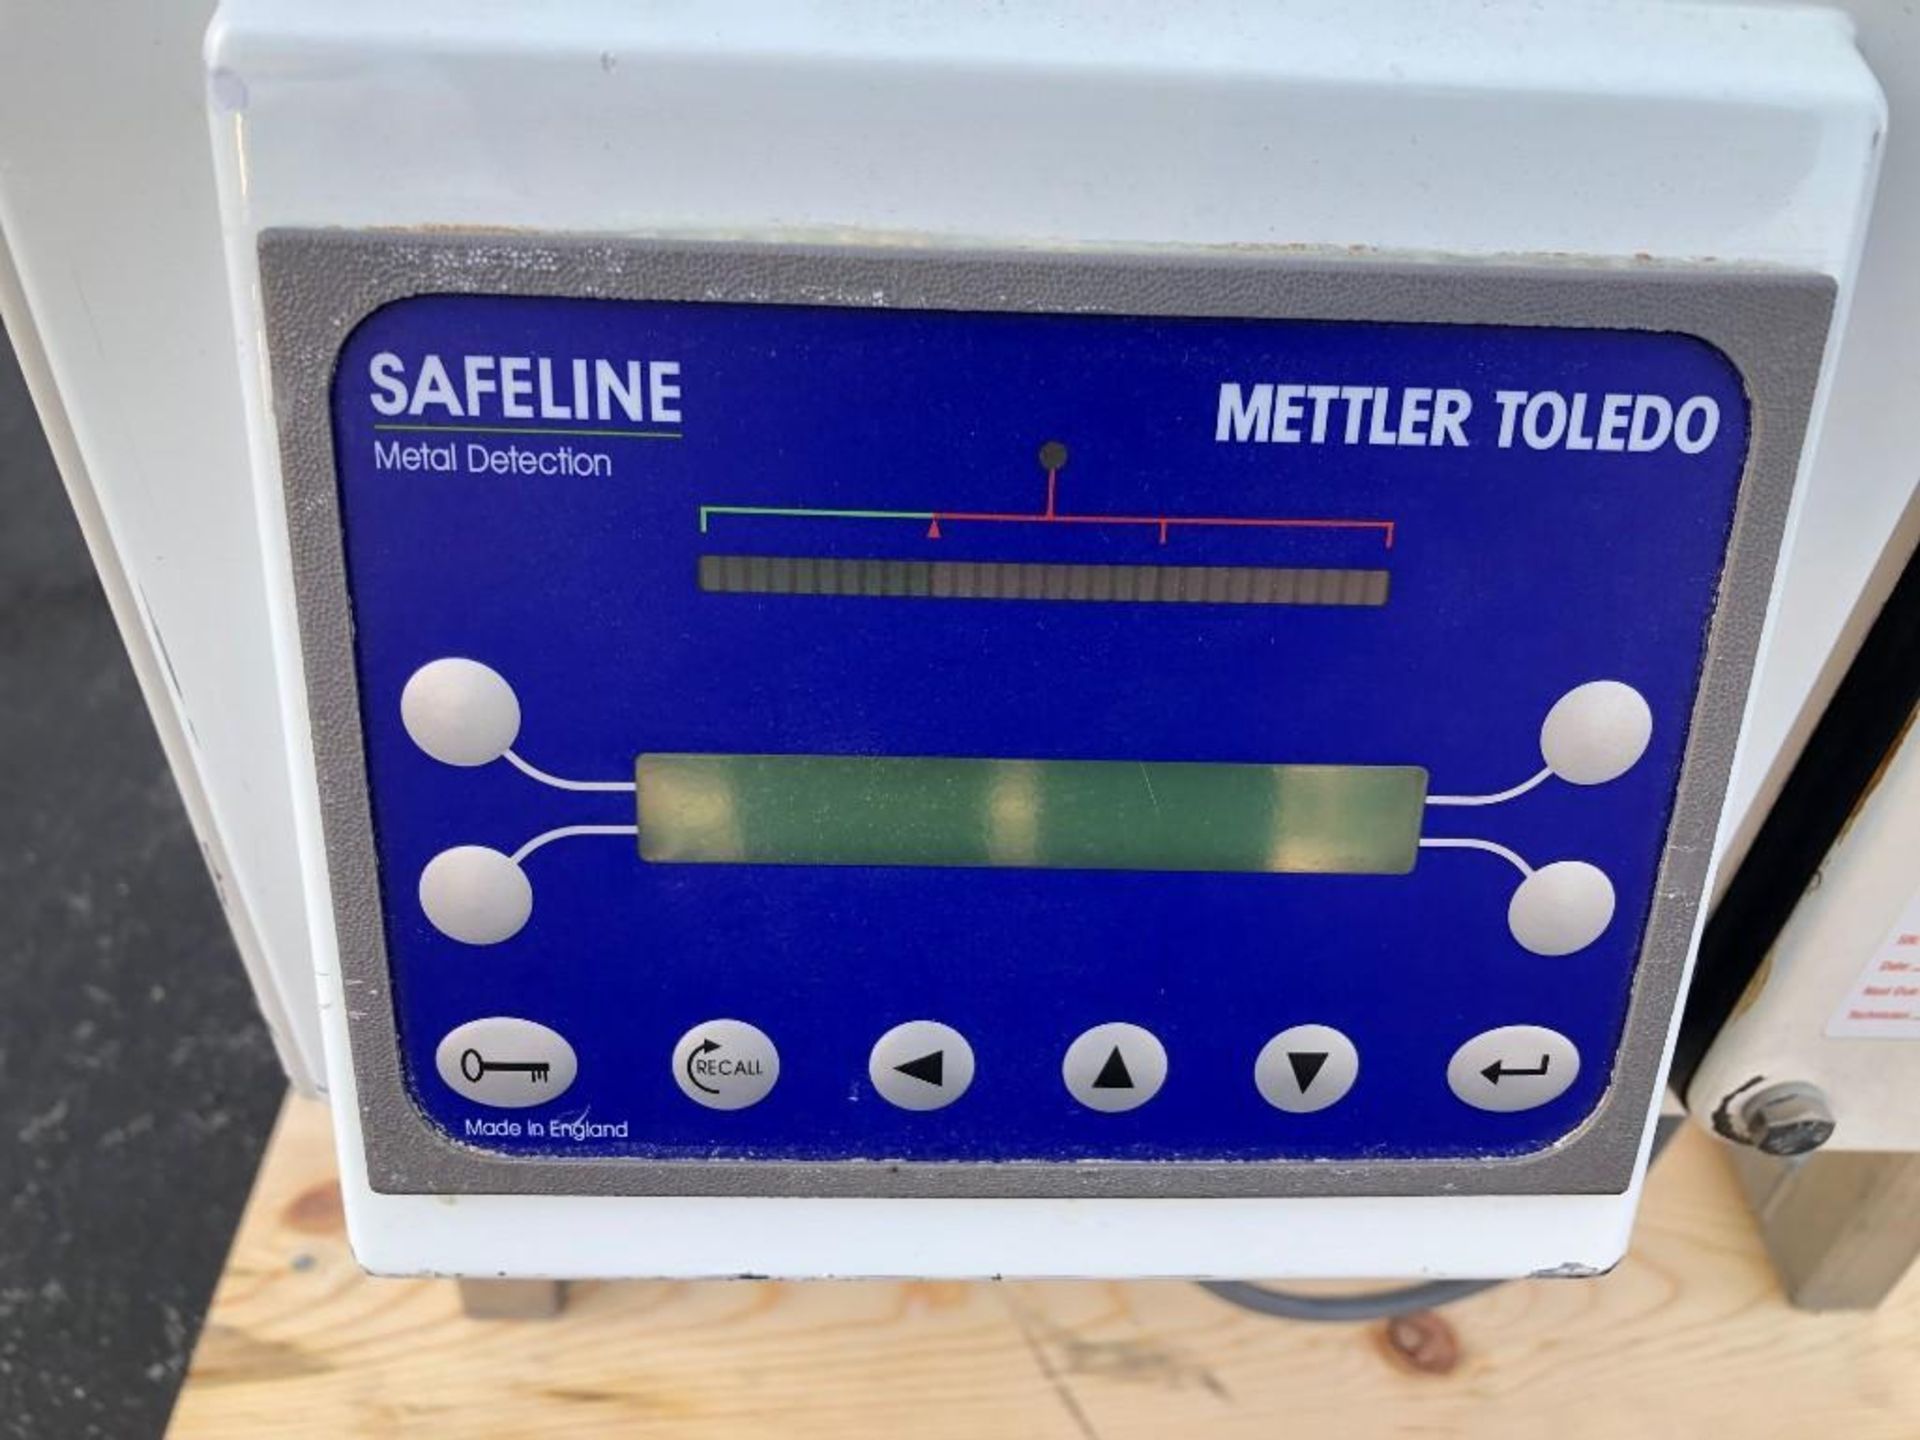 Safeline Metal Detector for Powder - Image 2 of 6